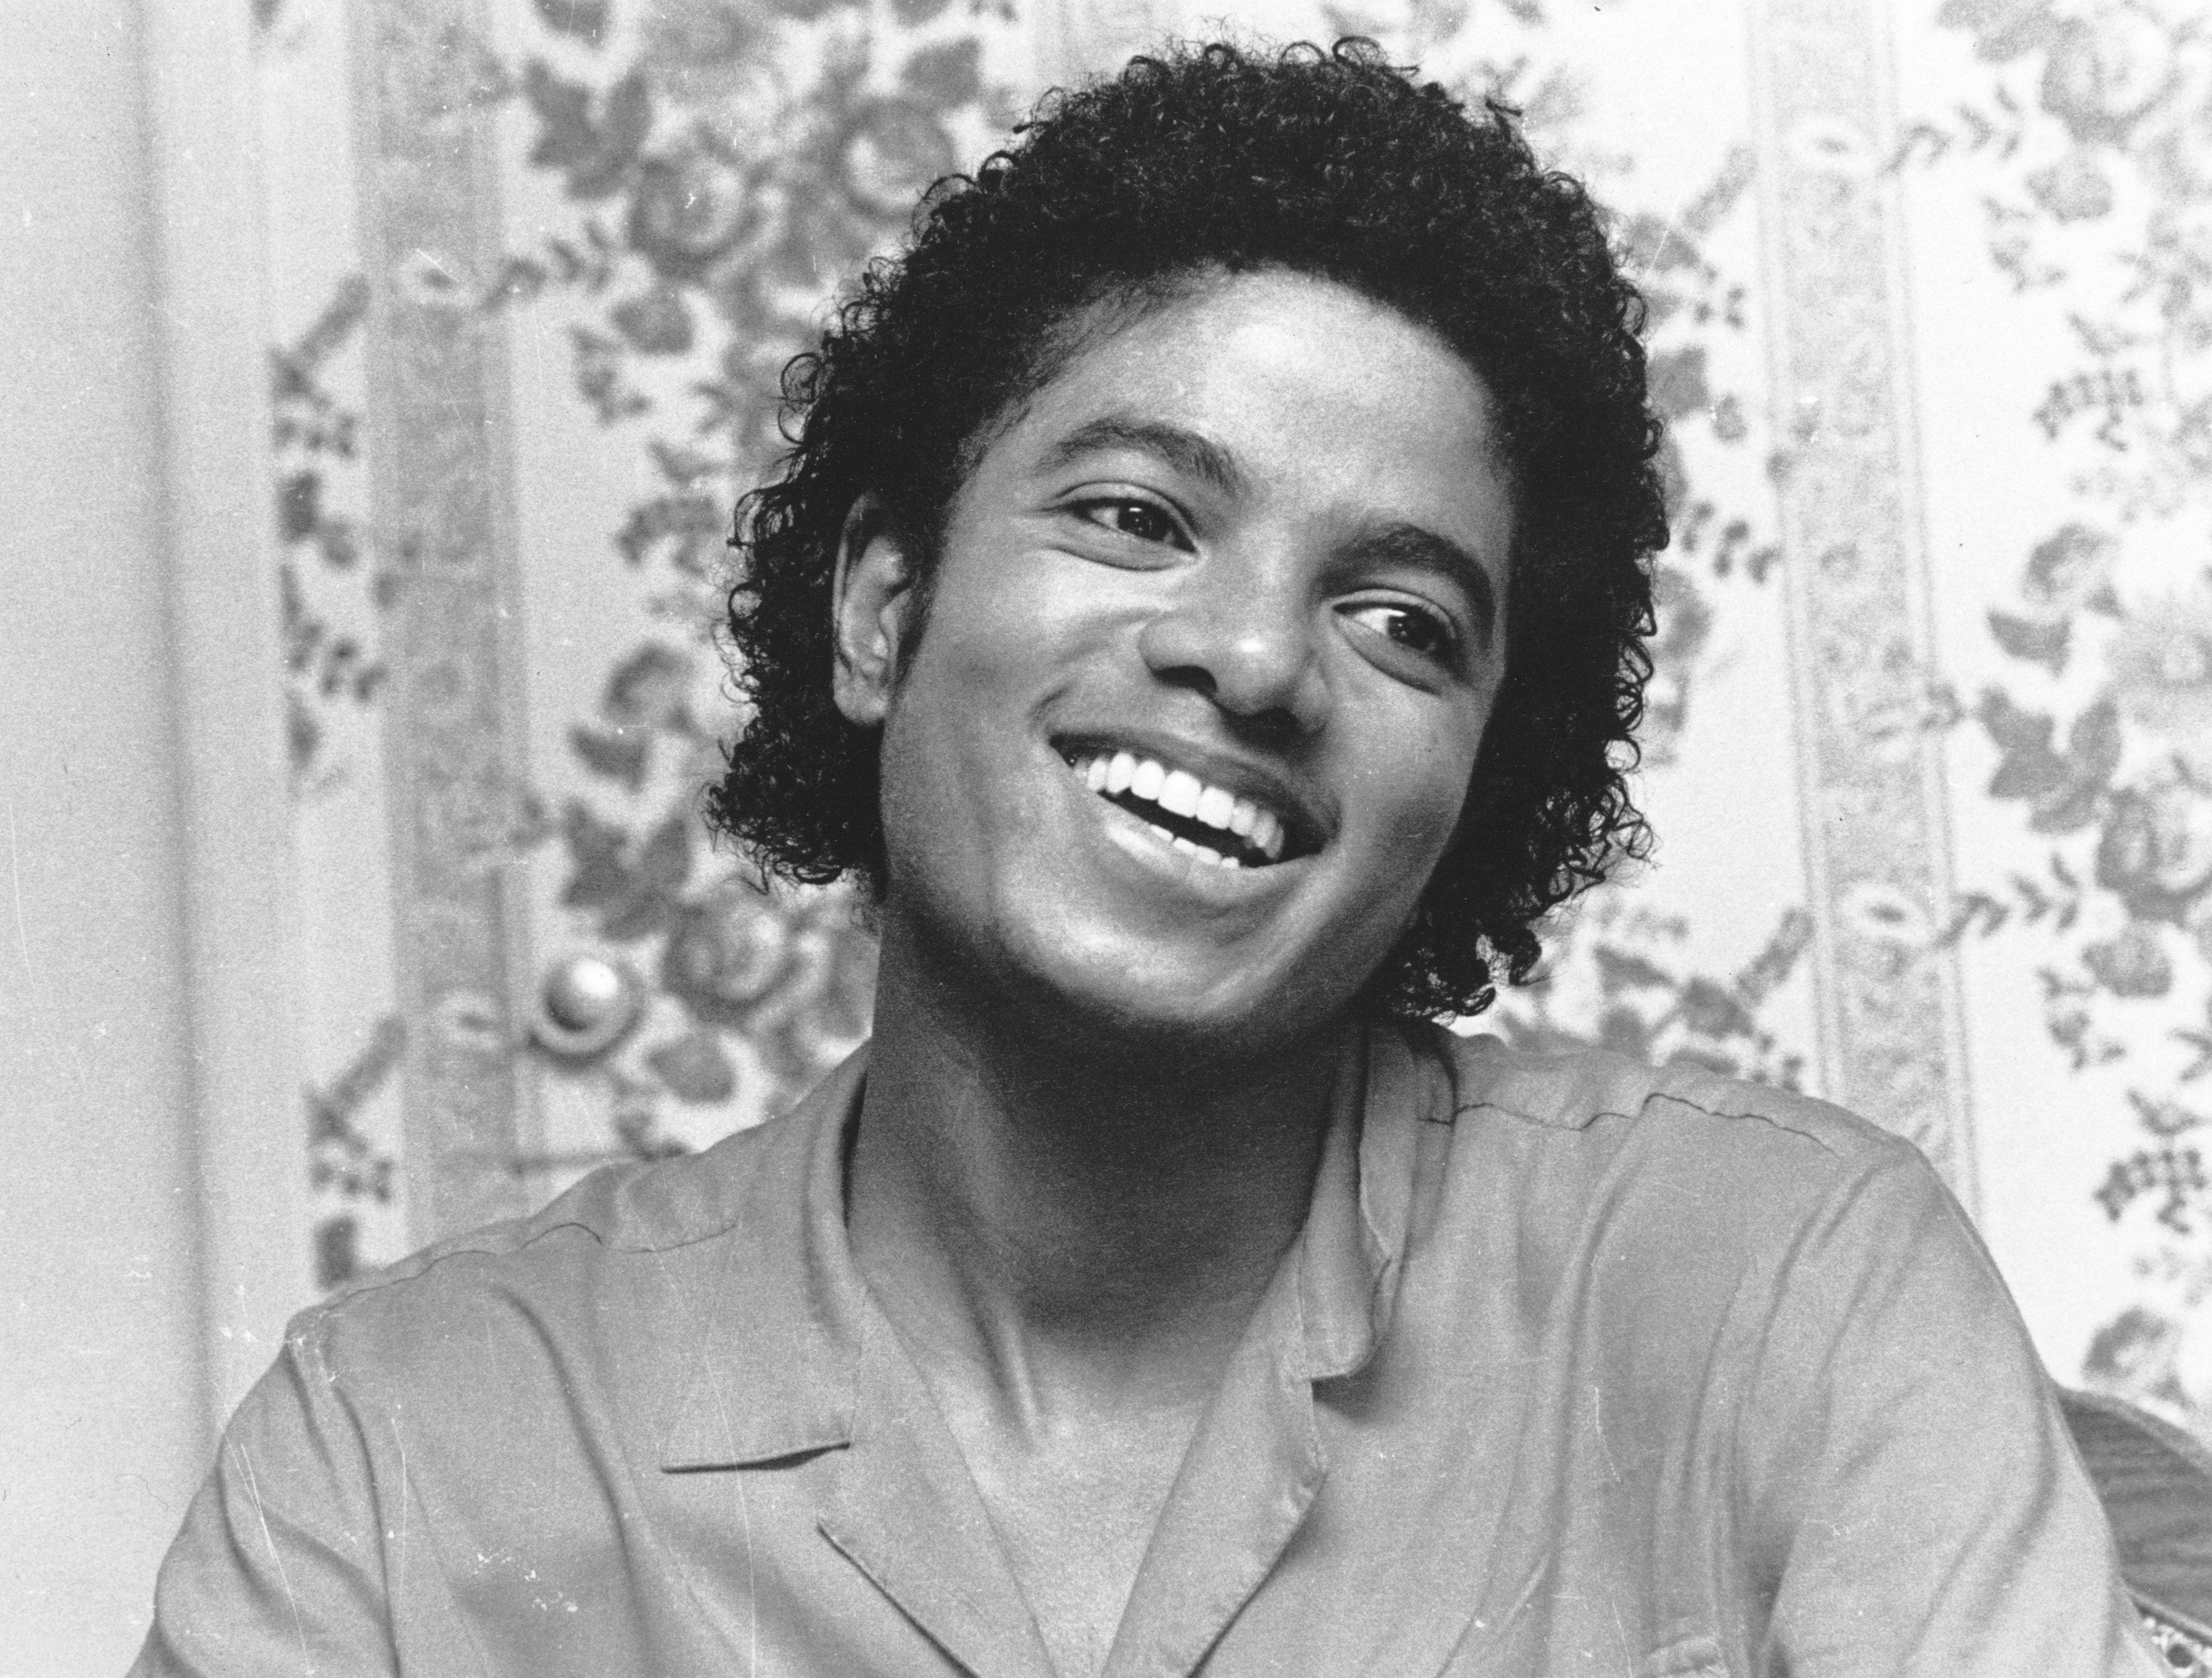 Michael Jackson smiling during the "Beat It" era